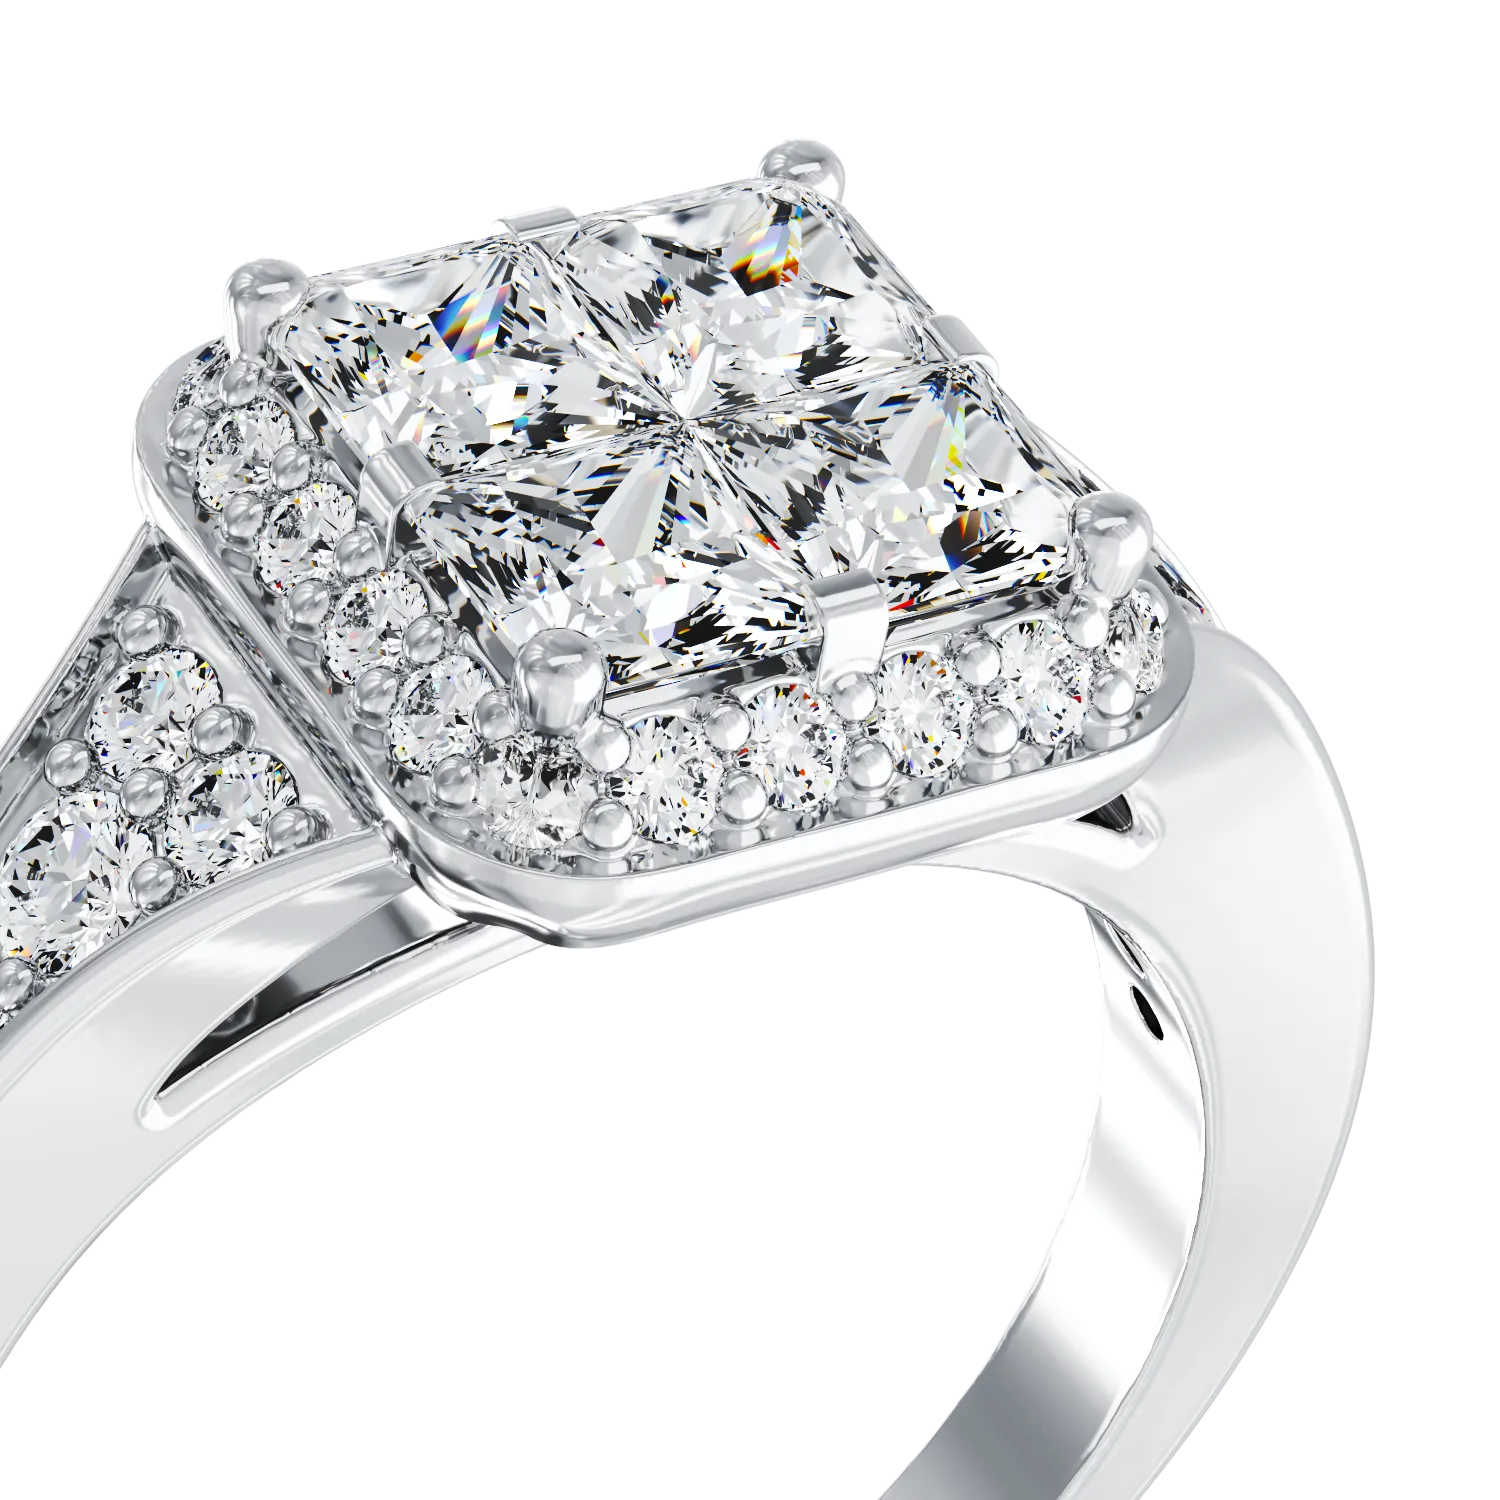 Eljegyzési gyűrű 18K-os fehér aranyból 0,53ct gyémánttal és 0,35ct gyémántokkal. Gramm: 4,65